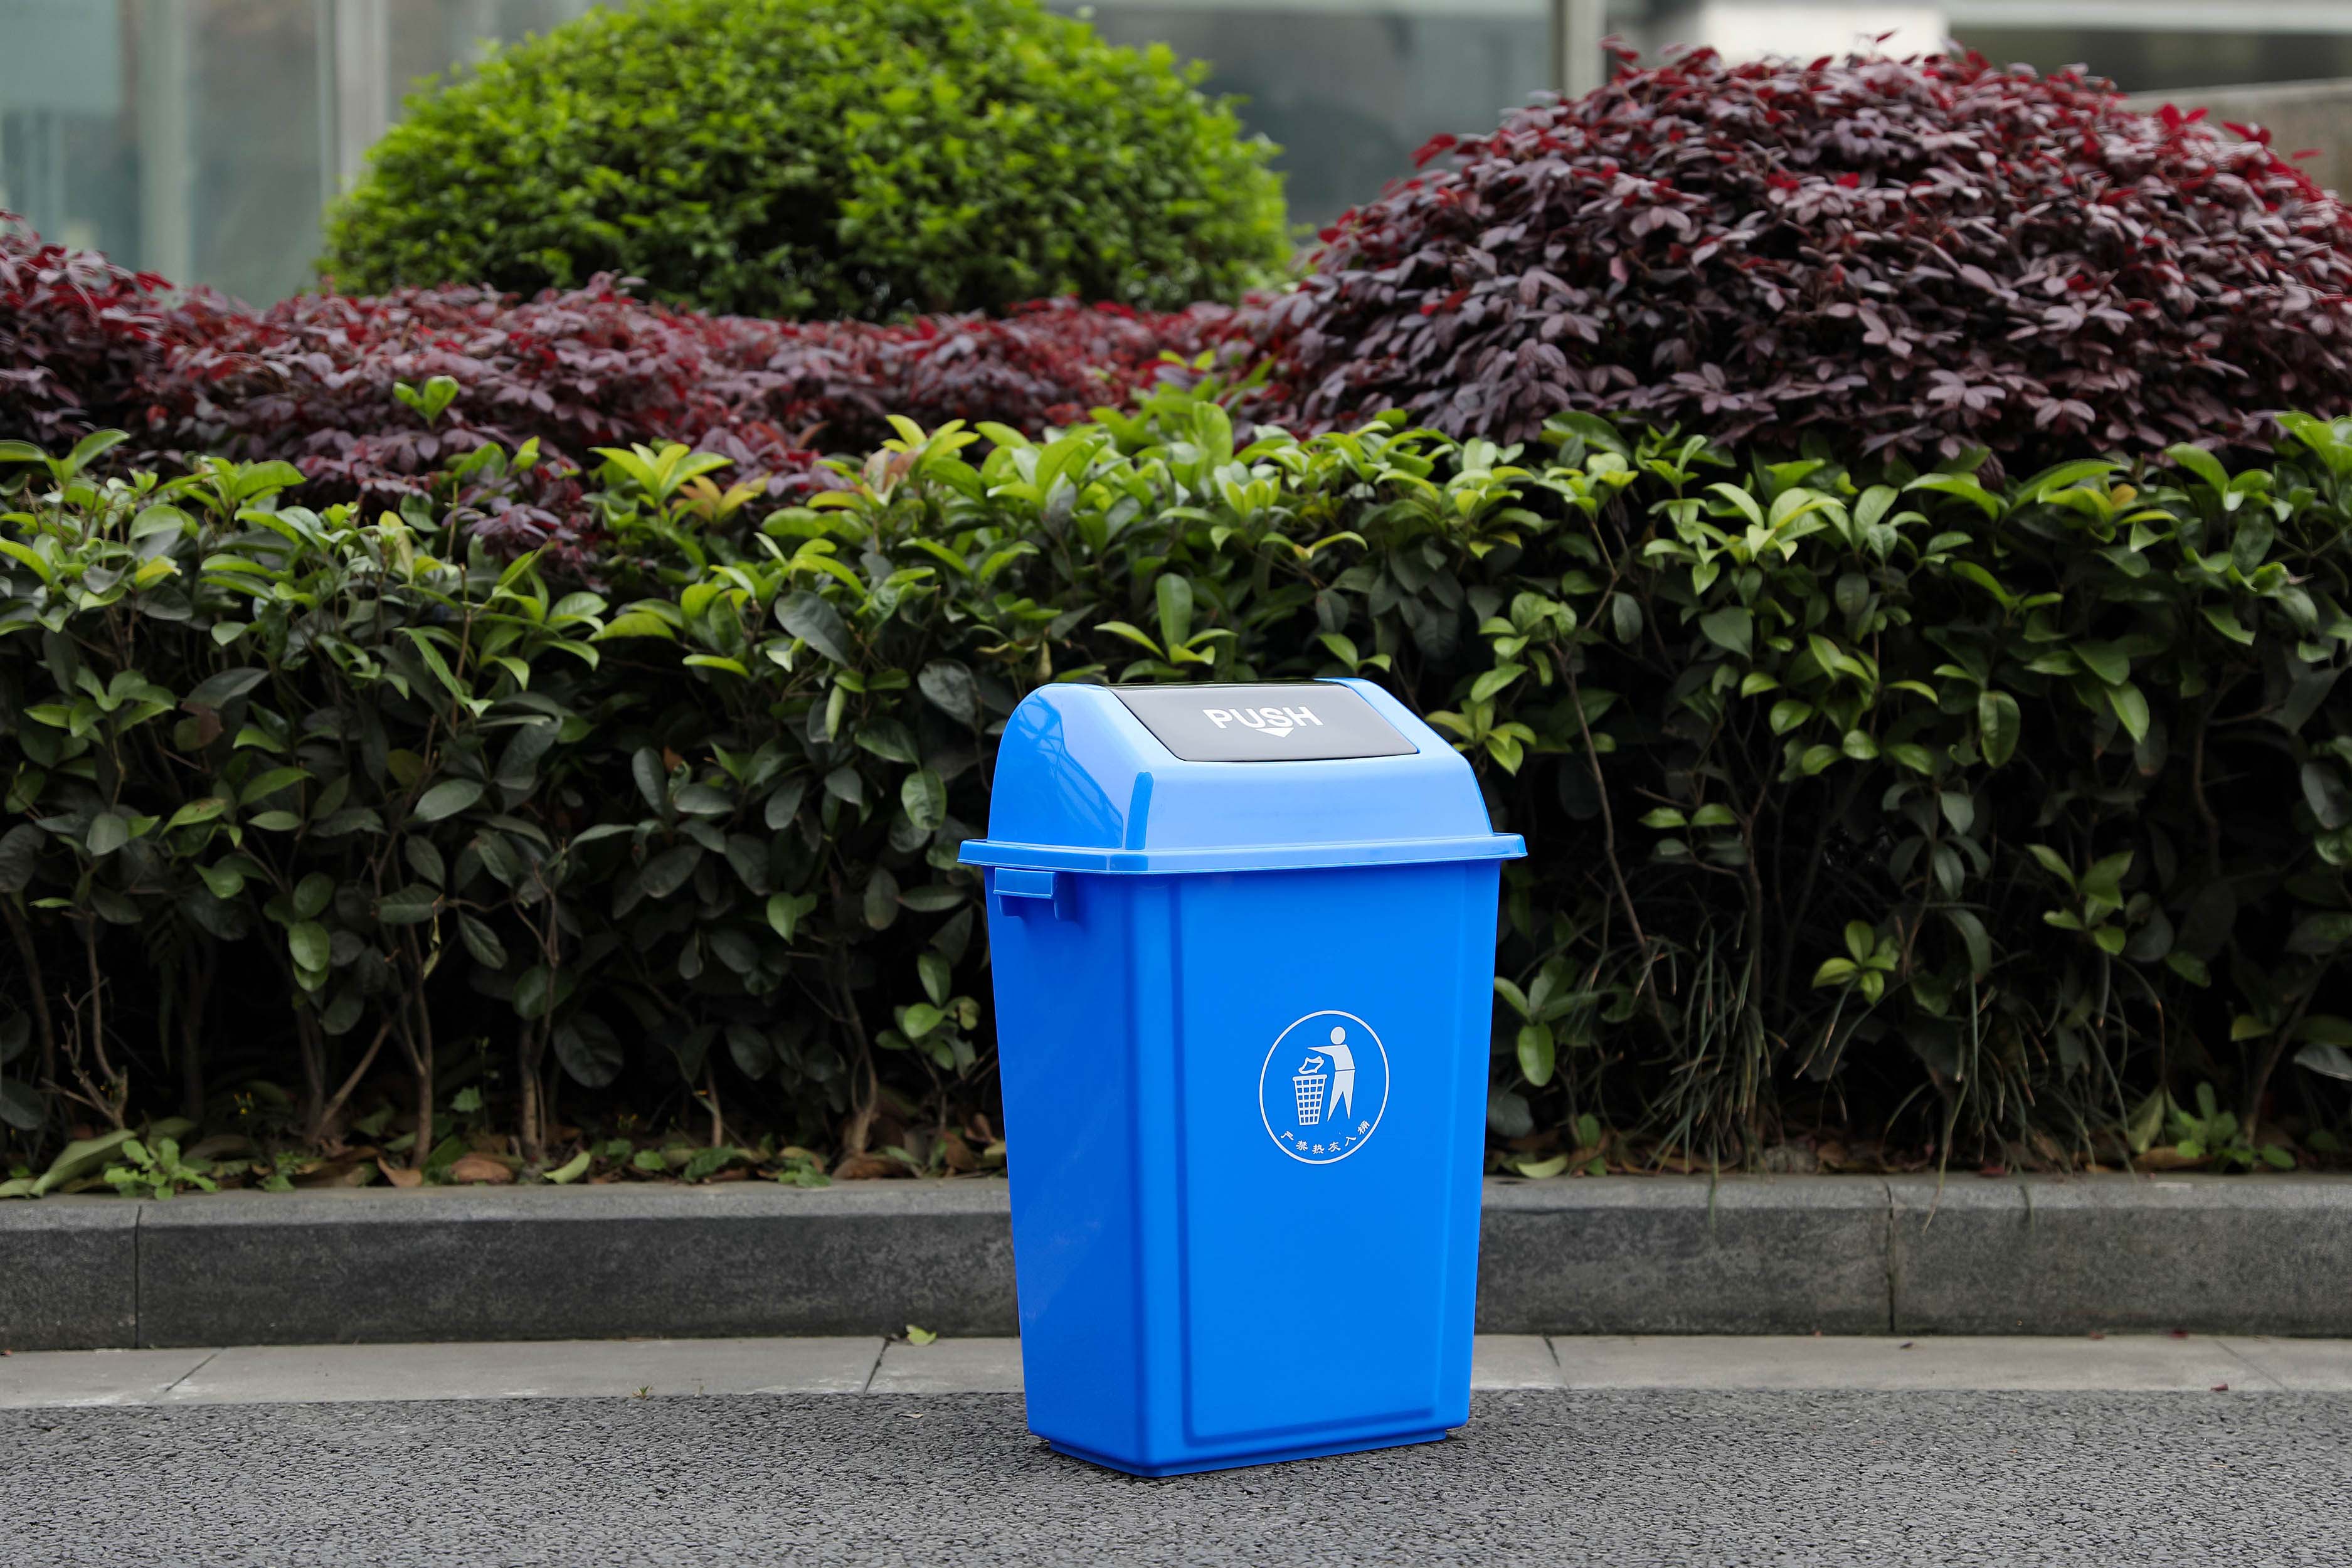 户外分类钢木垃圾桶YTD07 - 青岛鑫金邦清洁设备有限公司